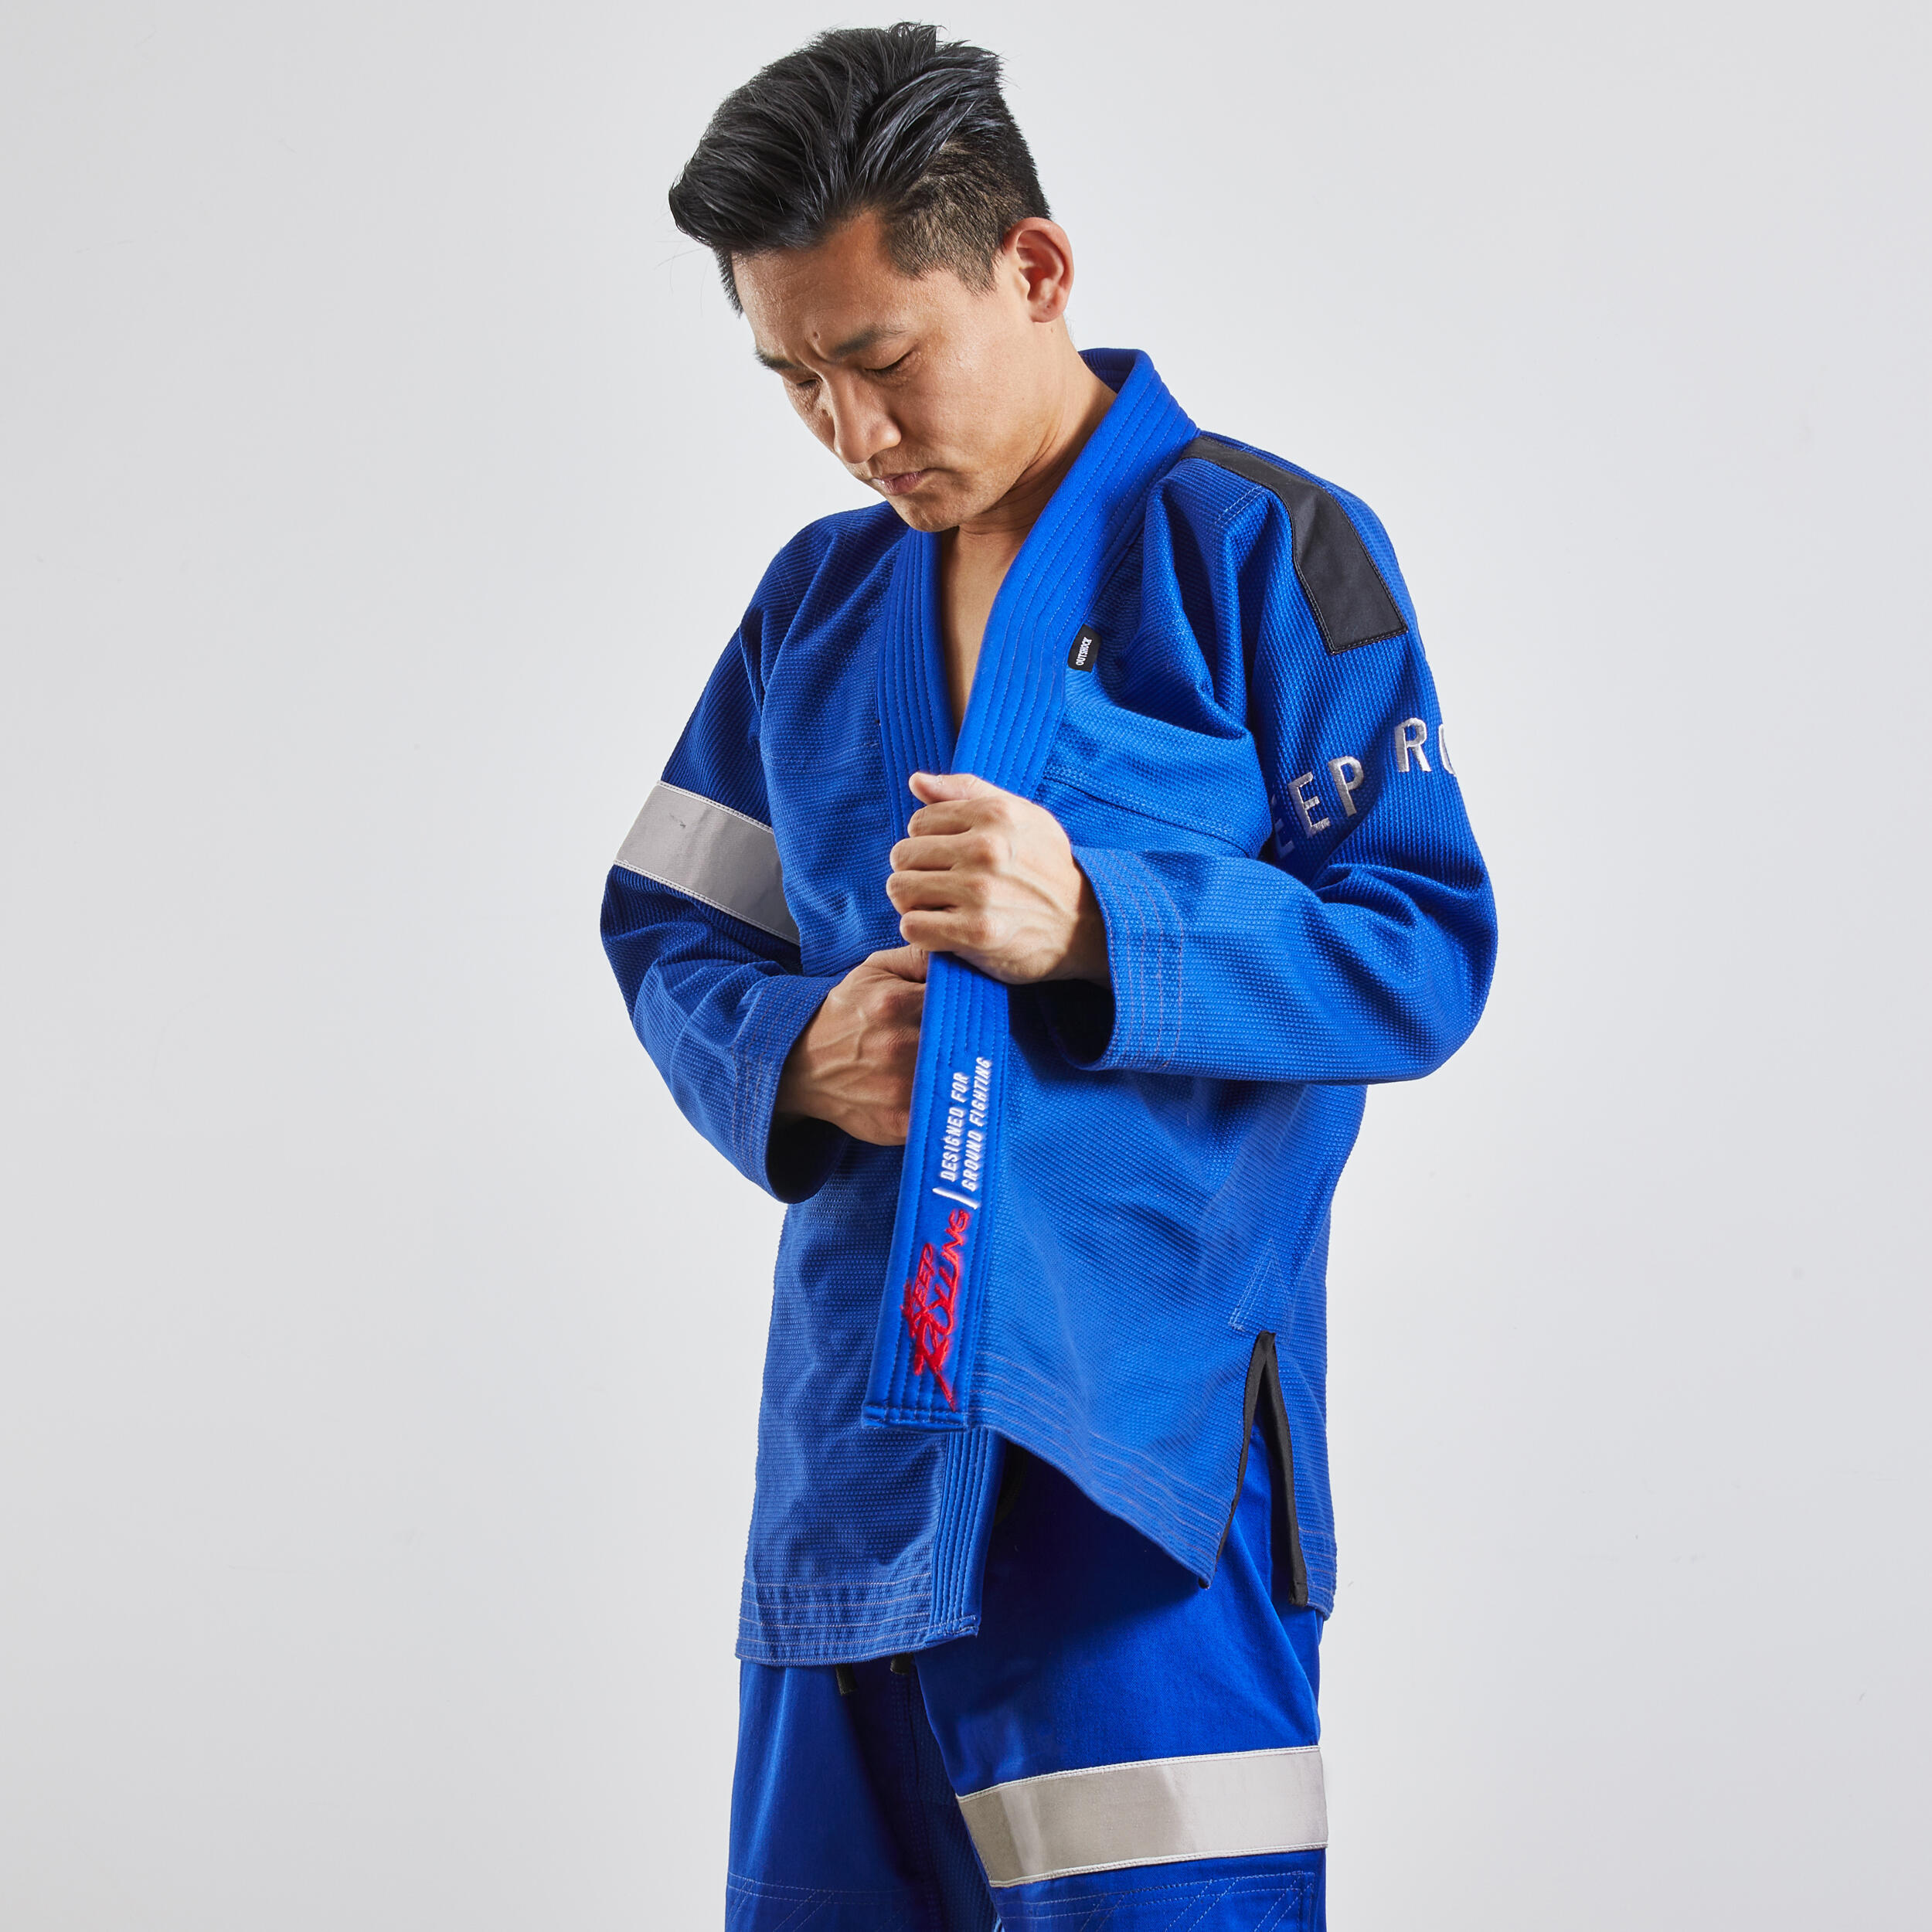 500 Brazilian Jiu-Jitsu Adult Uniform - Blue 2/9